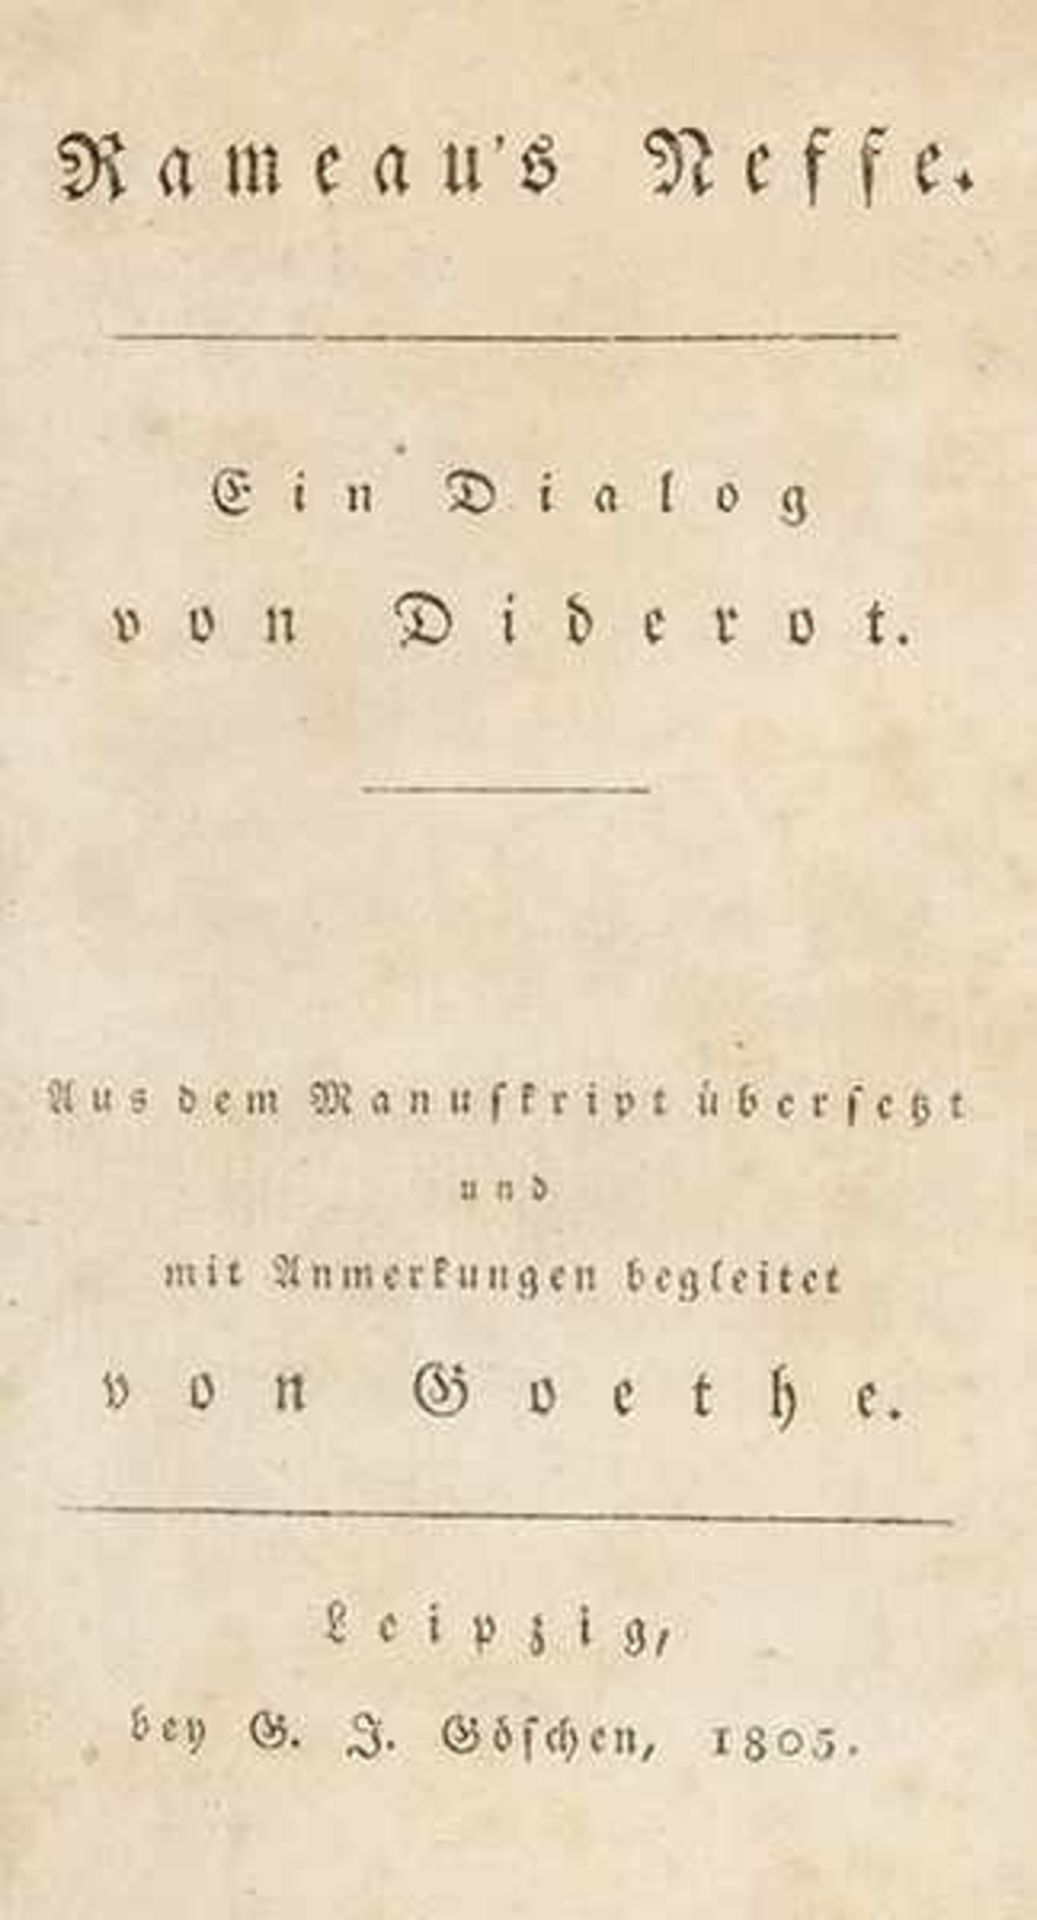 Diderot, Denis. Rameau's Neffe. Ein Dialog. Aus dem Manuskript übersetzt und mit Anmerkungen